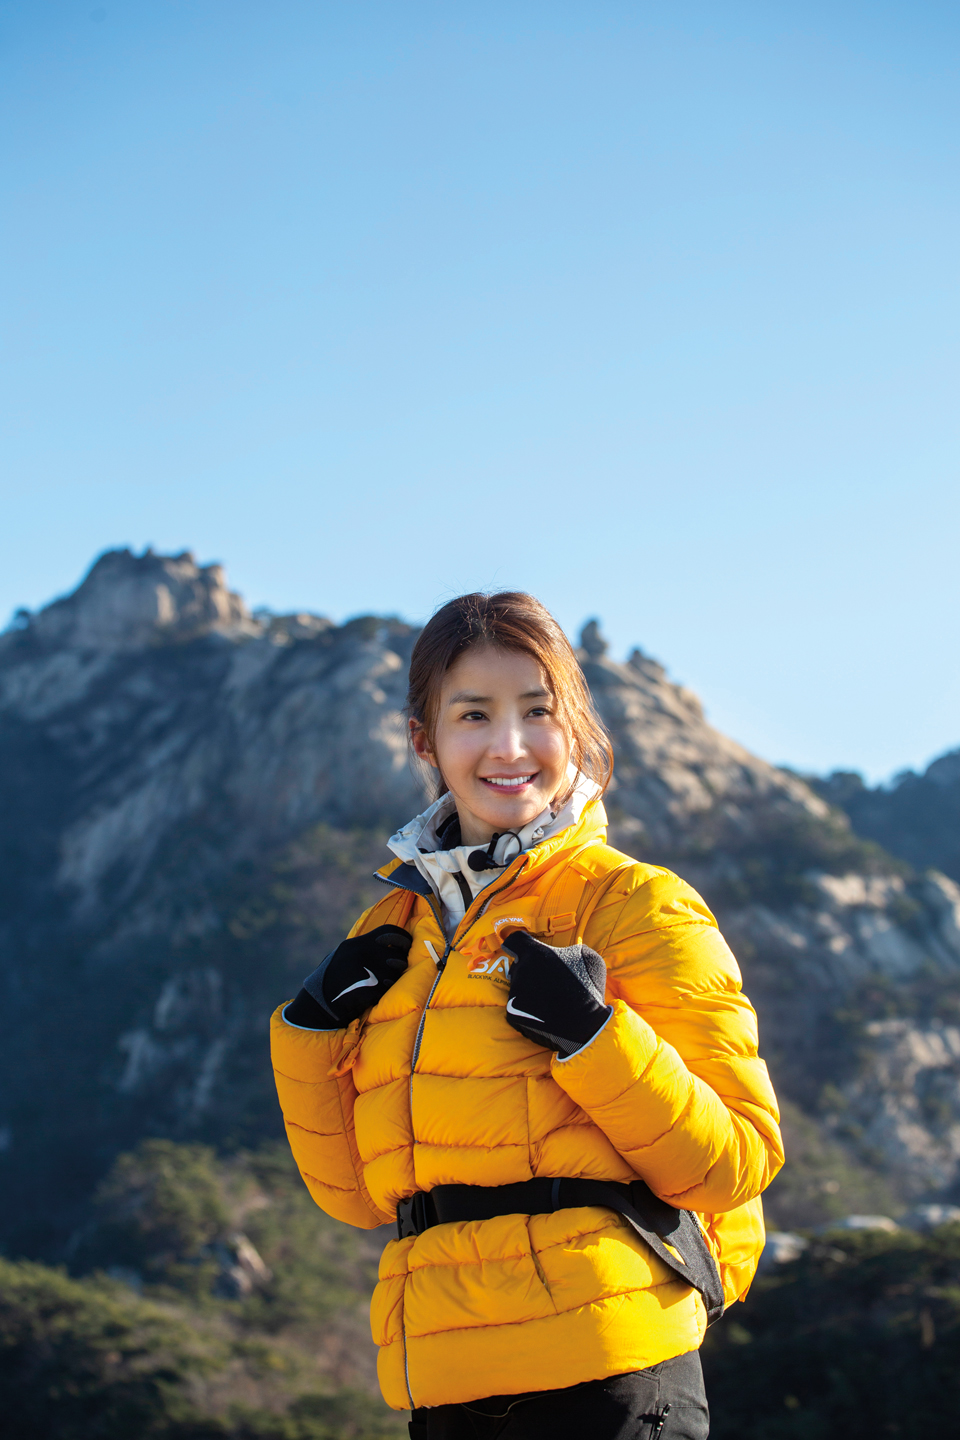 비봉능선의 석문 위에 올라 경치를 즐기는 배우 이시영. 등산에 빠진 그녀는 유튜브 등산전문 채널을 운영하고 있다.